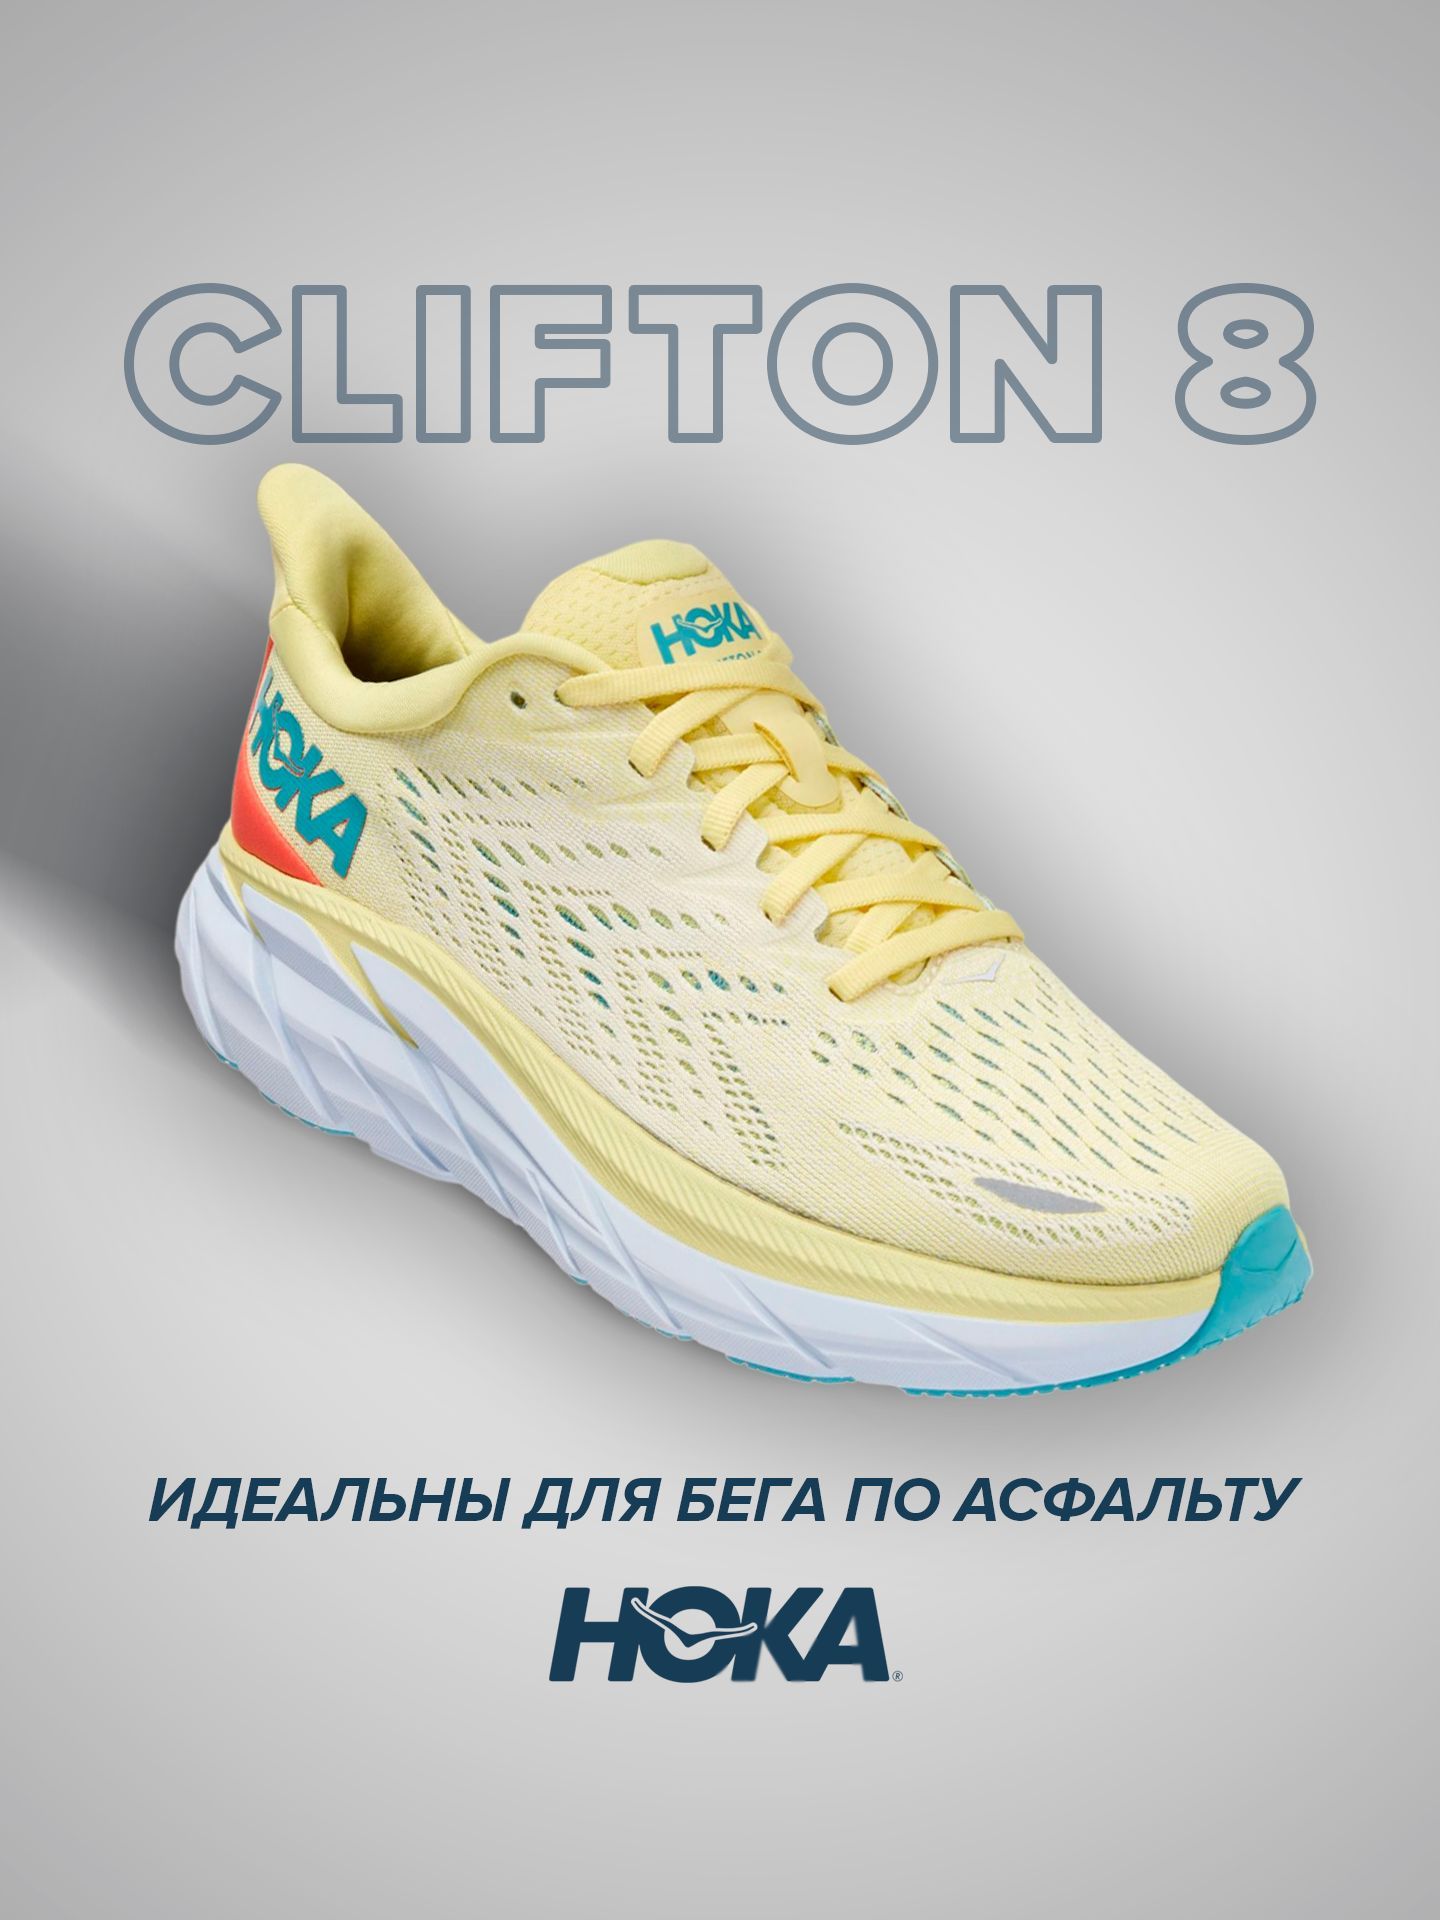 Спортивные кроссовки женские Hoka Clifton 8 желтые 7.5 US